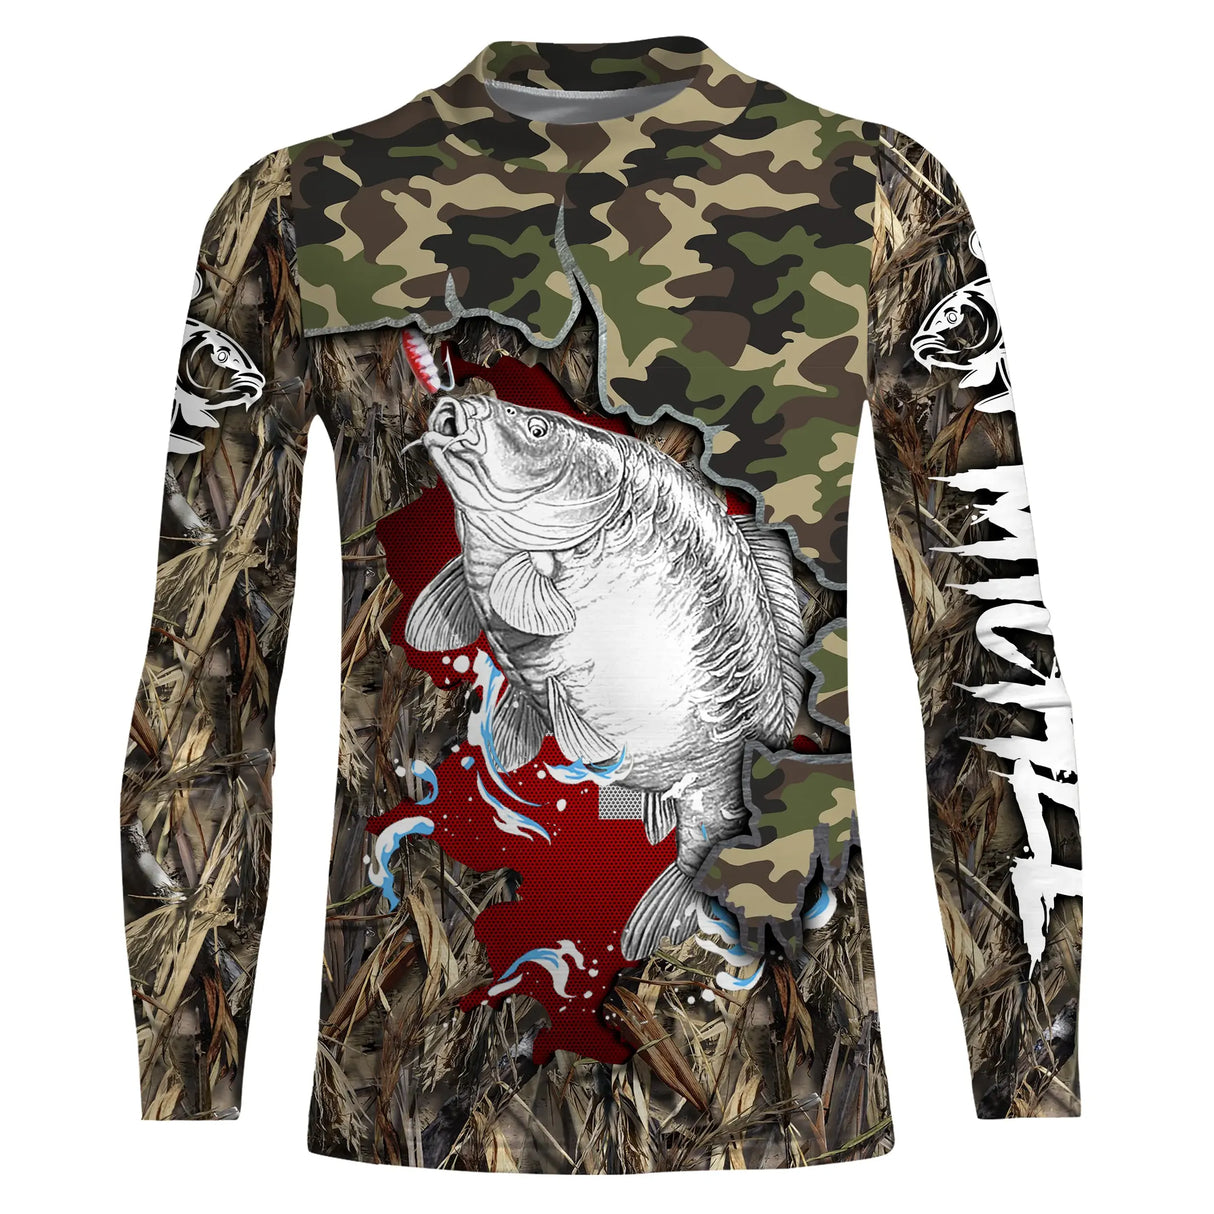 T-Shirt de Pêche à la Carpe en Camouflage - Style Unique pour Été et Hiver, Respirant et Éco-Conçu - CT19072215 T-shirt All Over Manches Longues Enfant